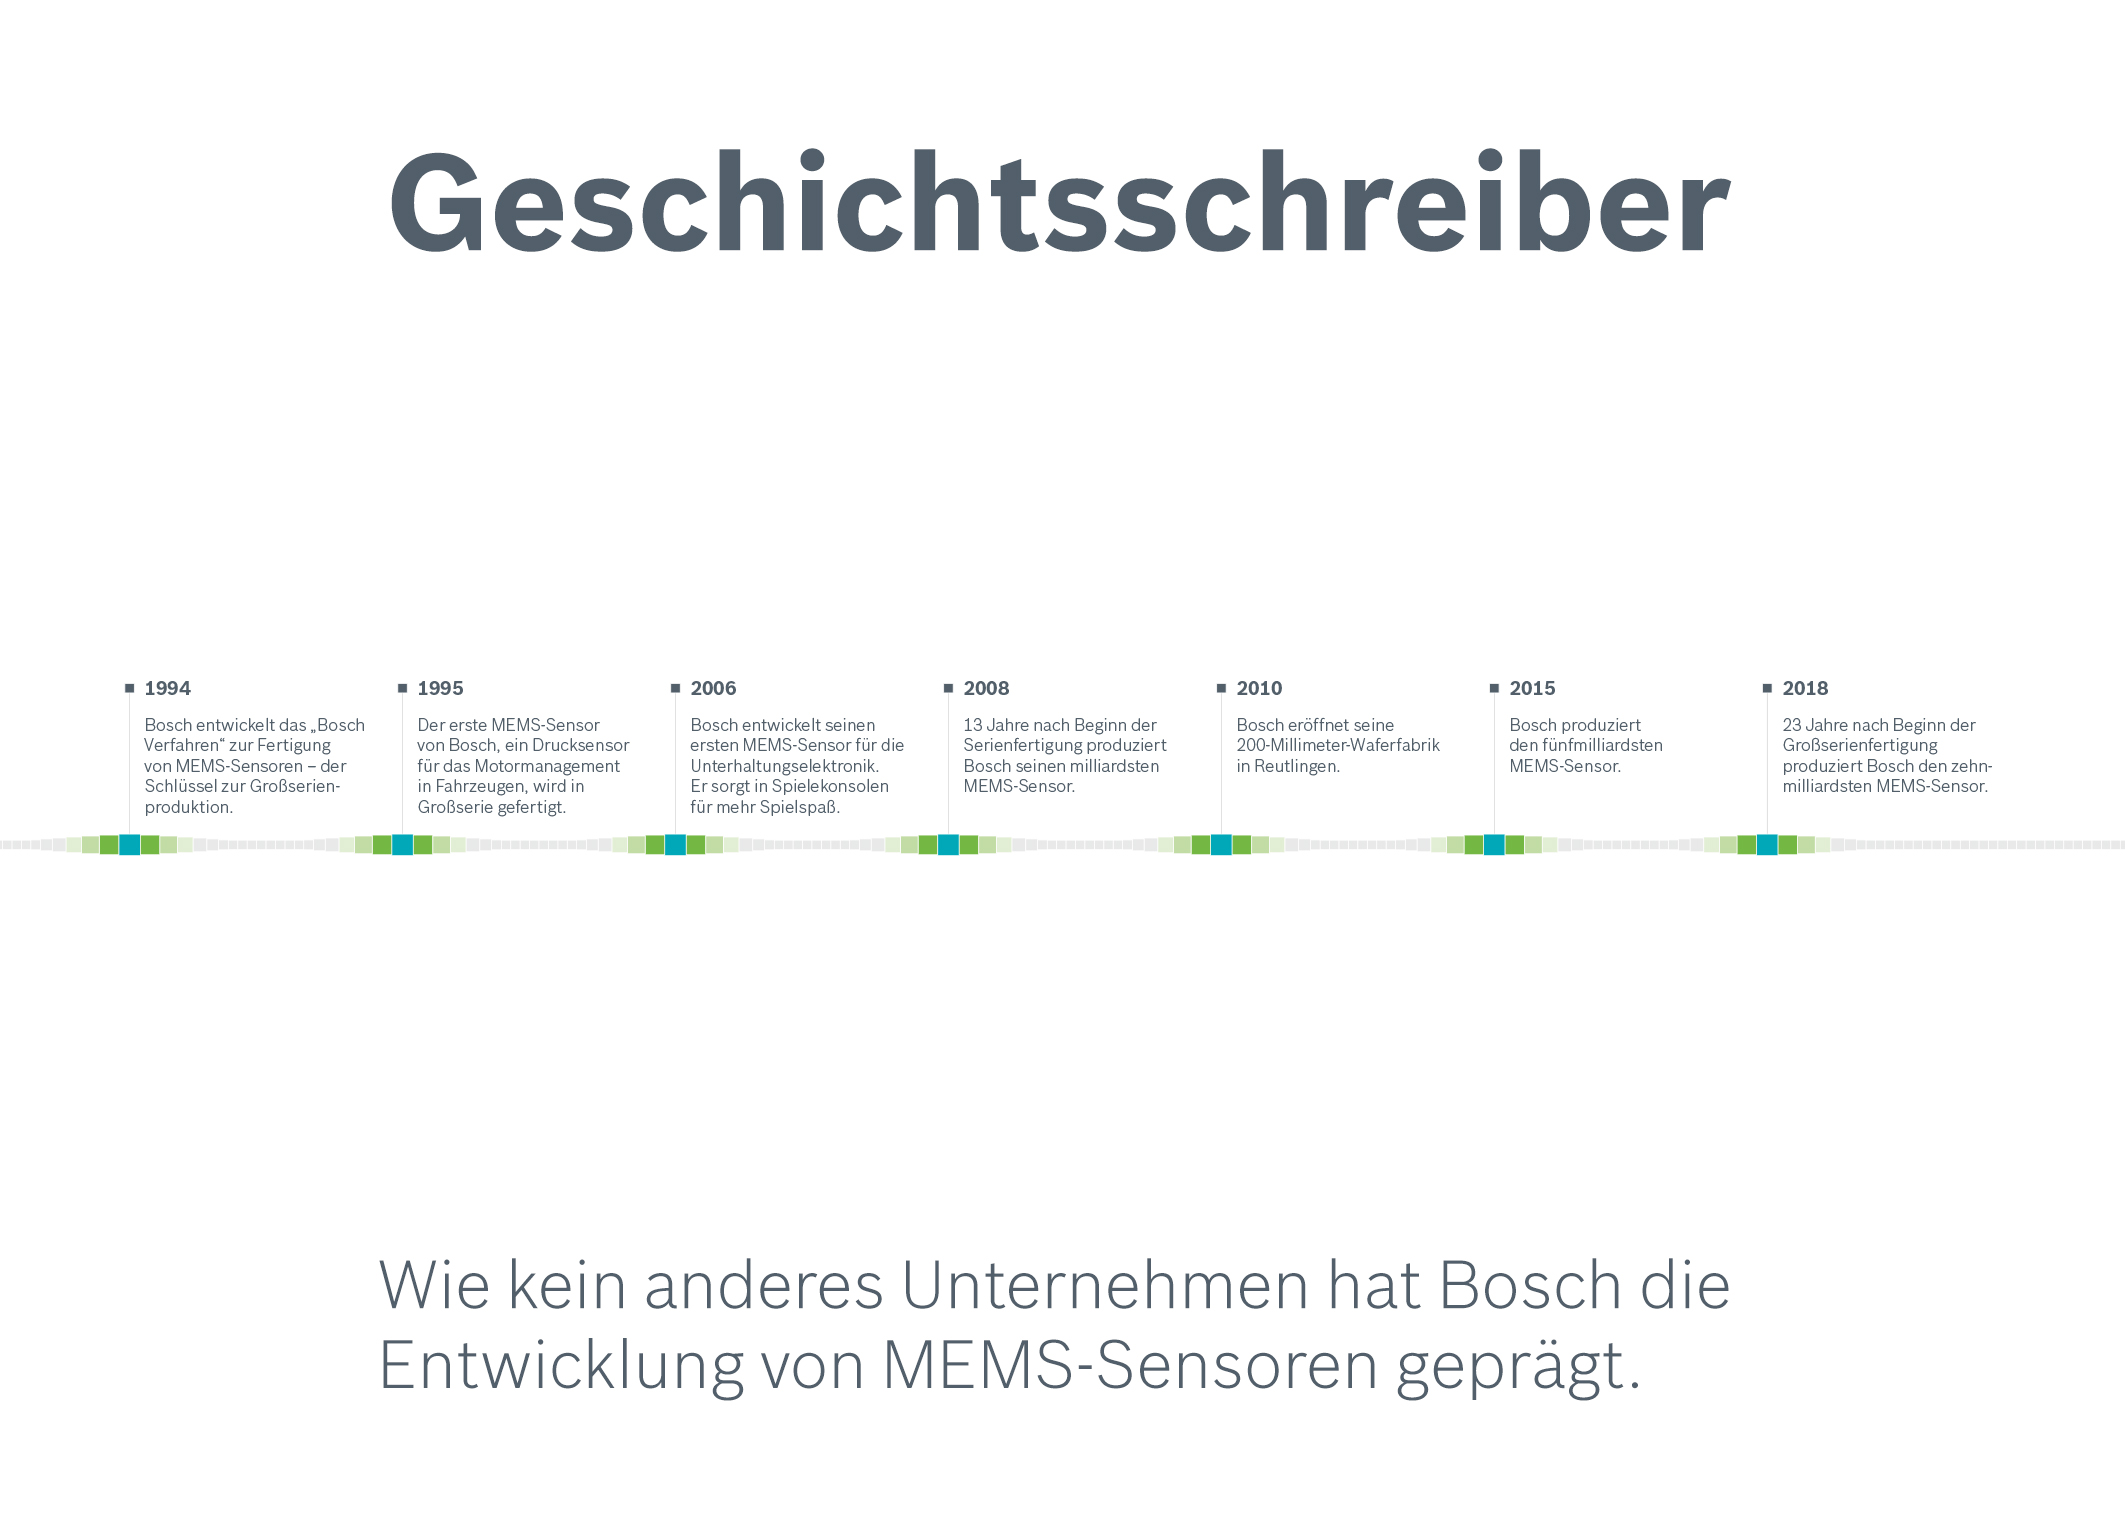 MEMS-Sensoren von Bosch